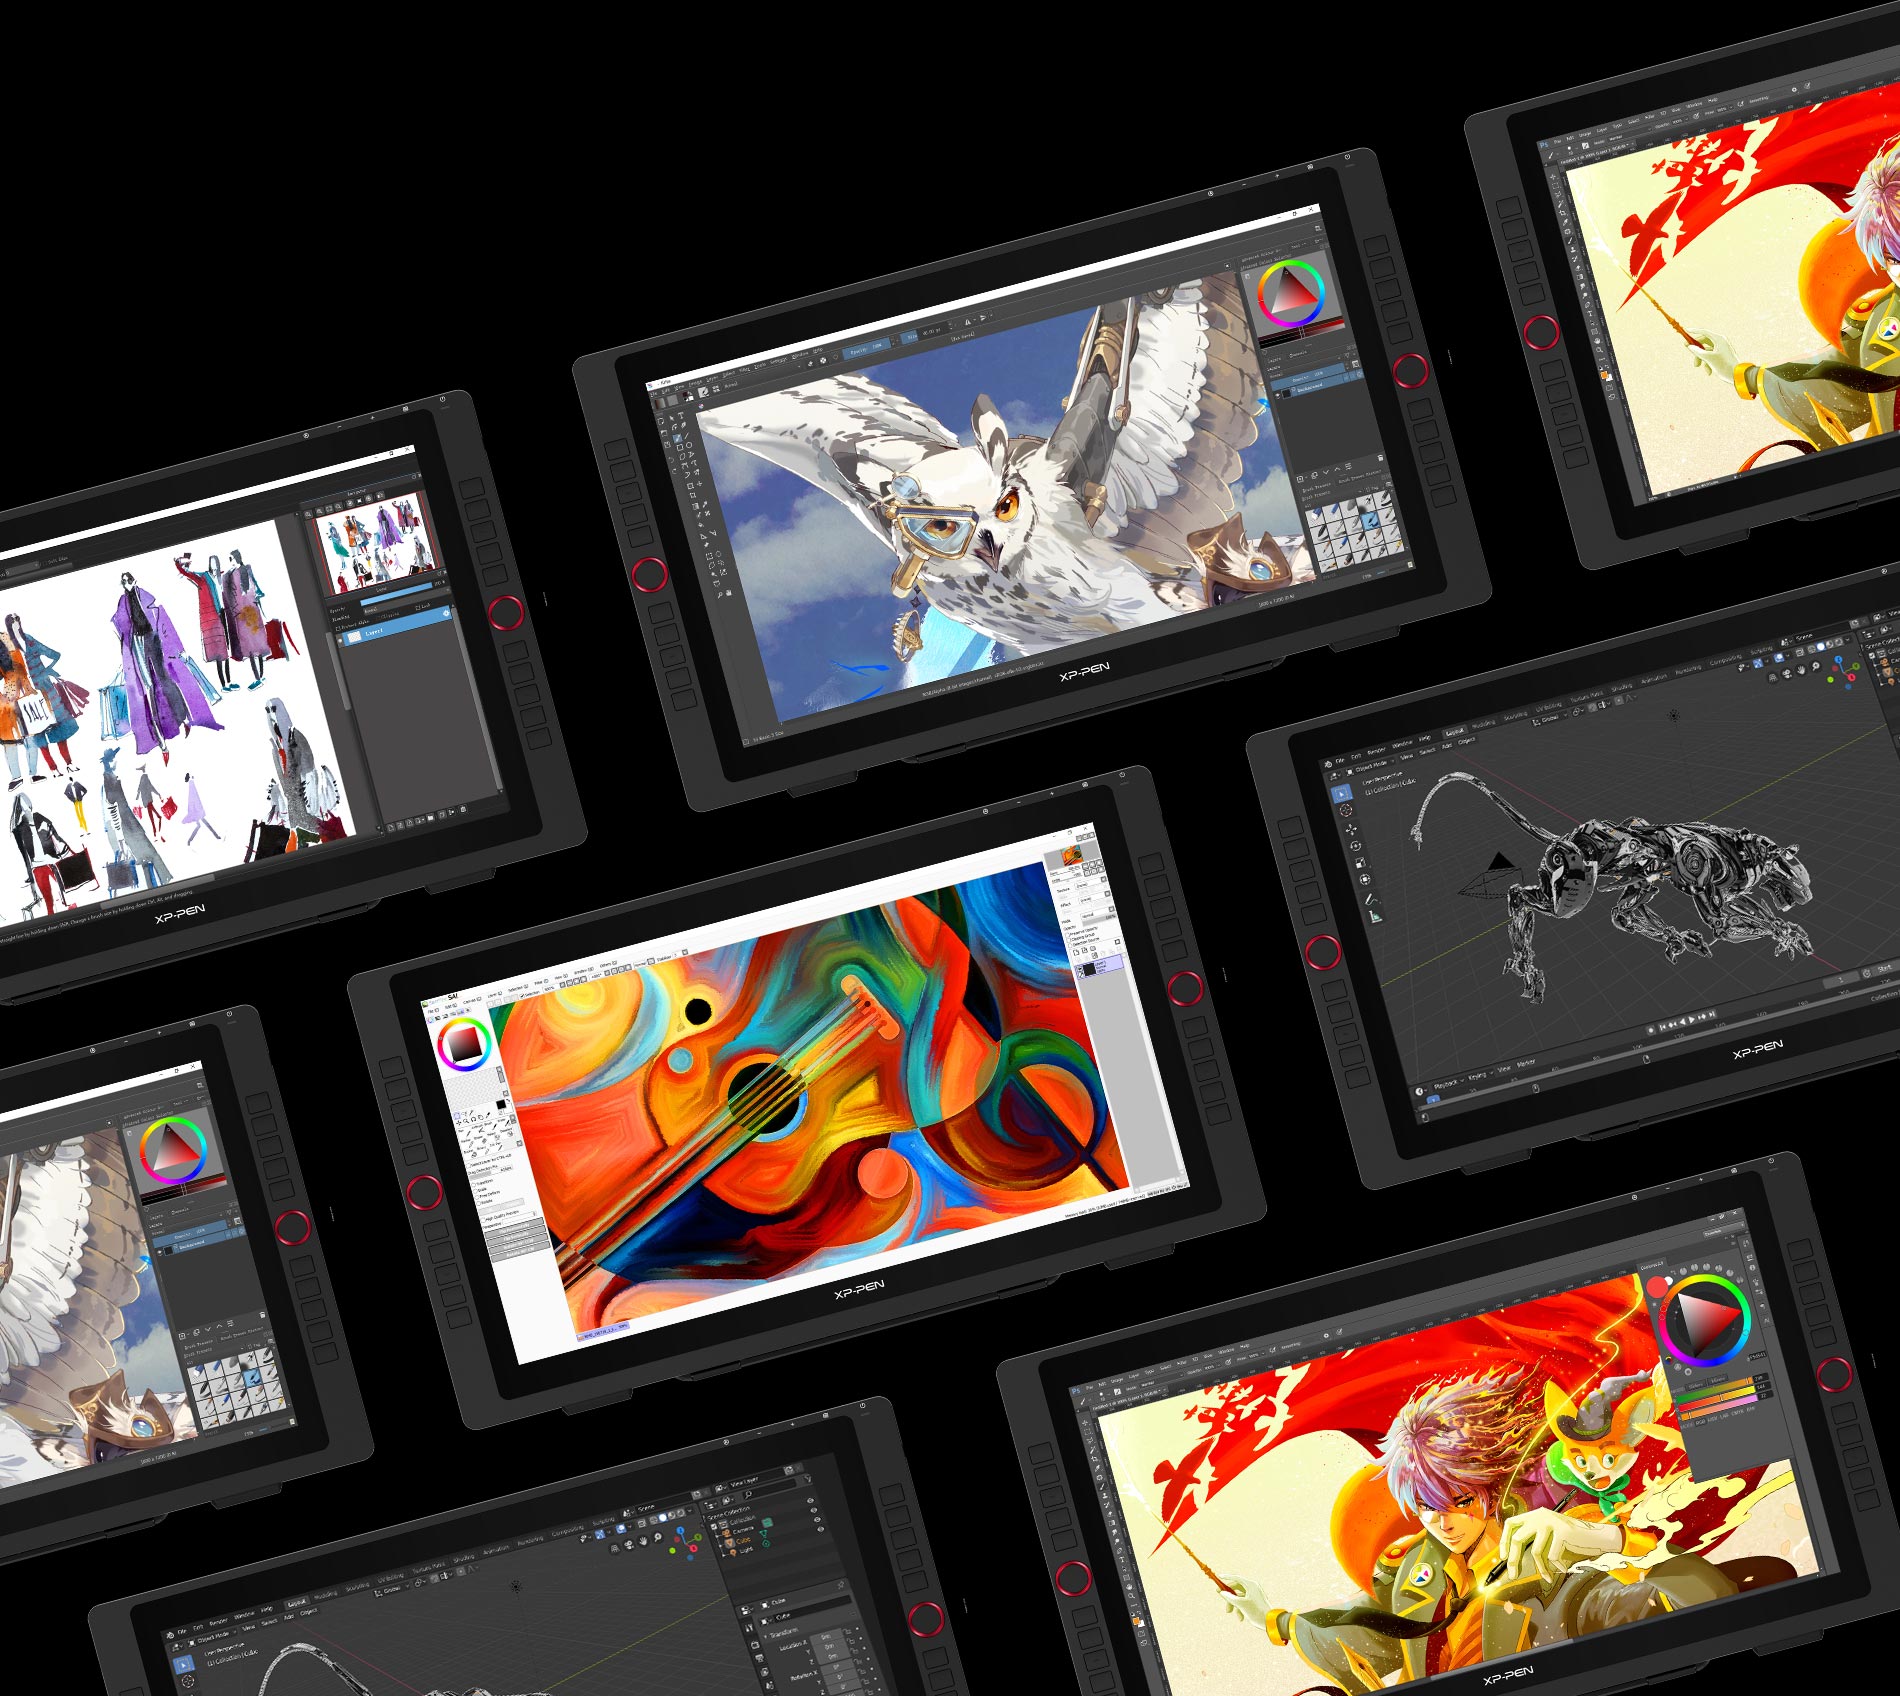 tableta digitalizadora XP-Pen Artist 22R Pro compatible con Windows , MAc OS y software de arte digital popular 